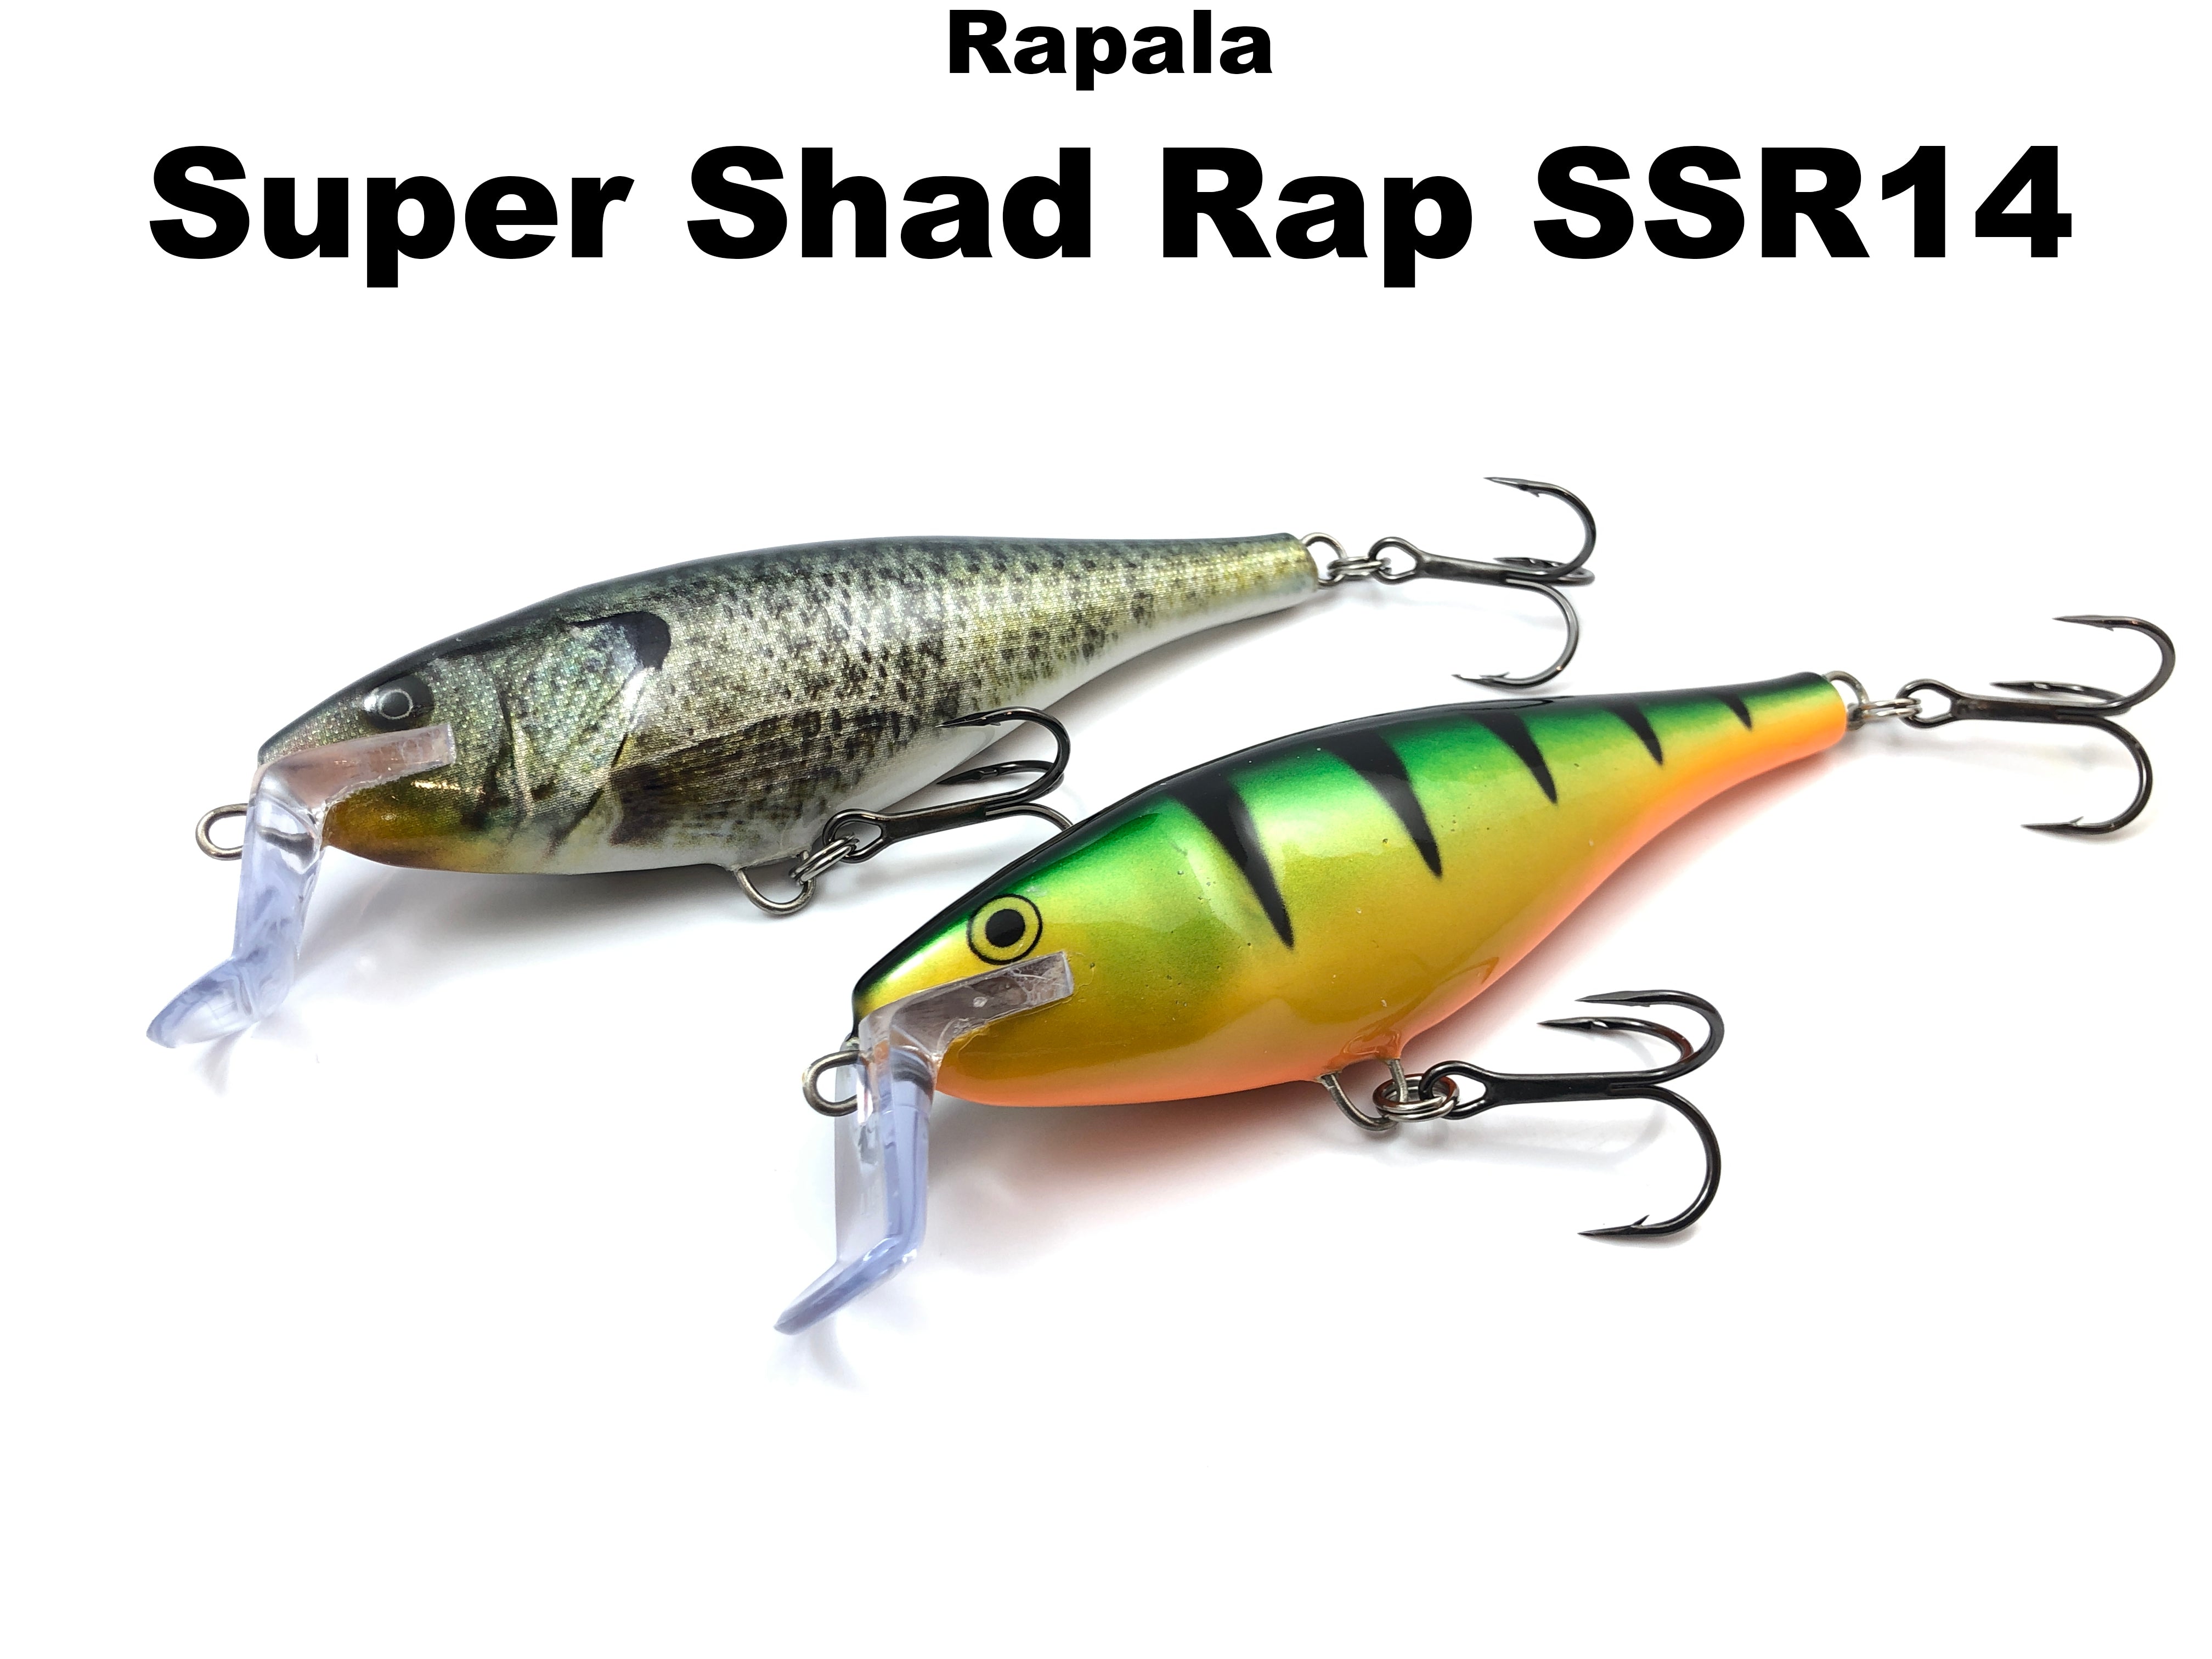 Rapala Super Shad Rap SSR-14 lot of 3 SPECIAL NP+CG+SFC, Colors